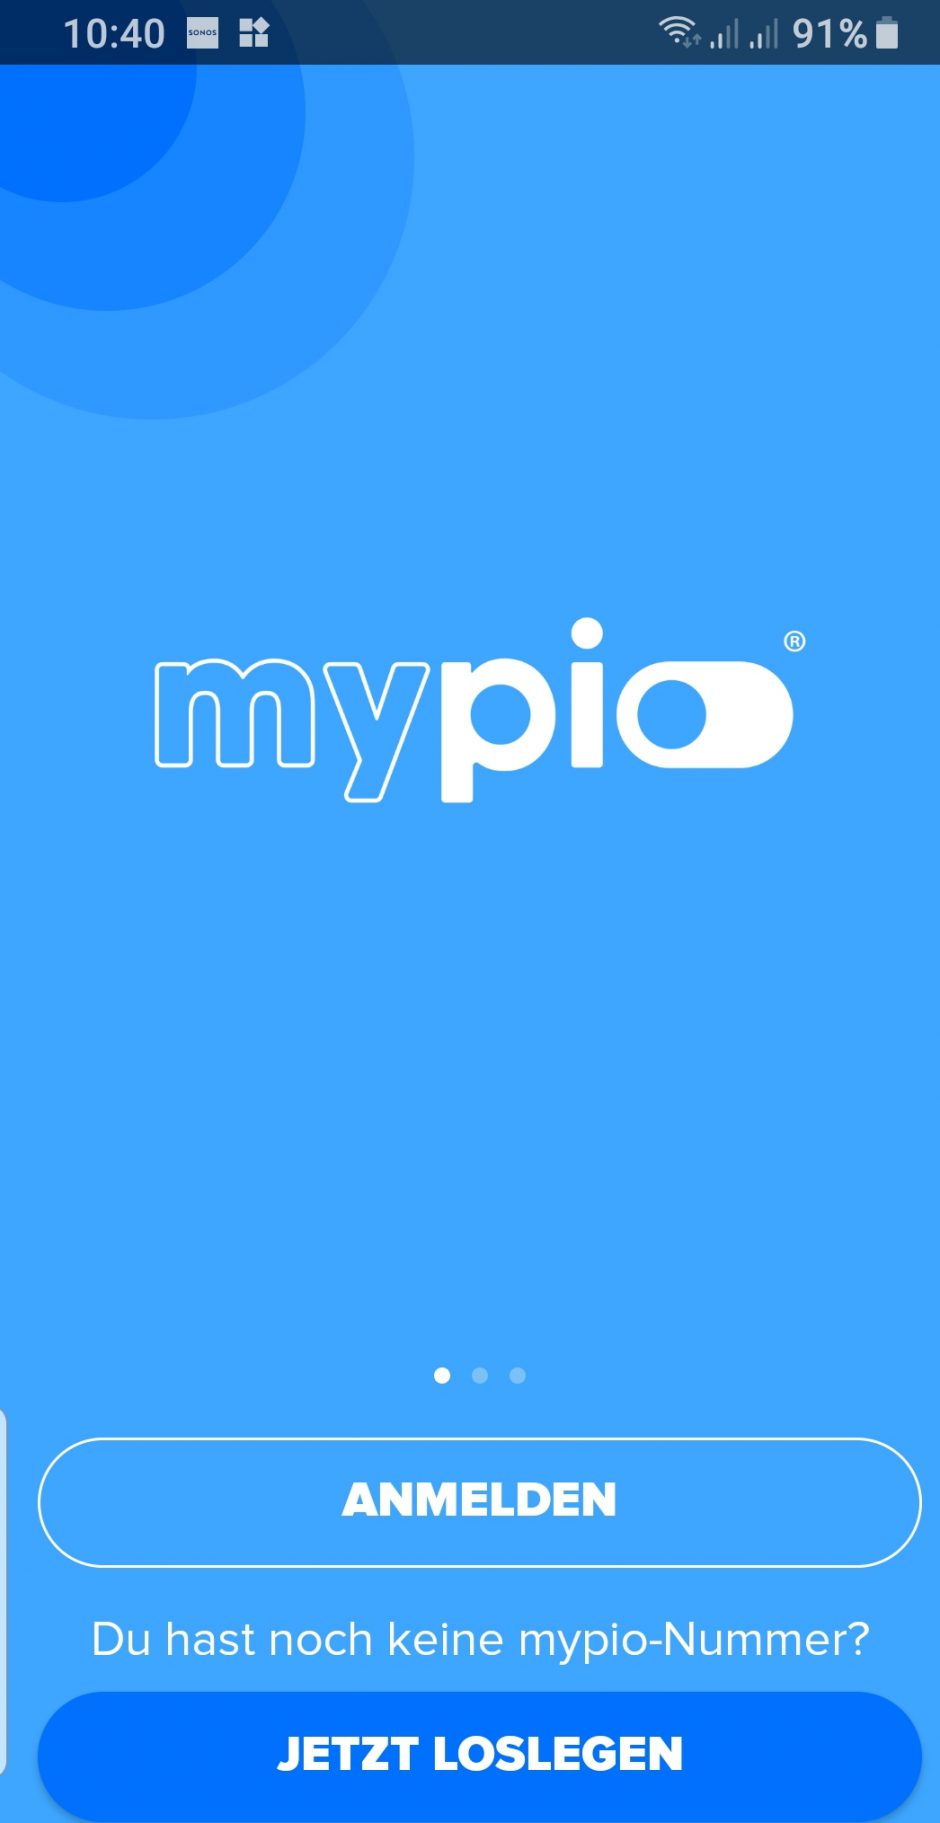 Die App von mypio erkennt bei Anmeldung Rufnummer nicht